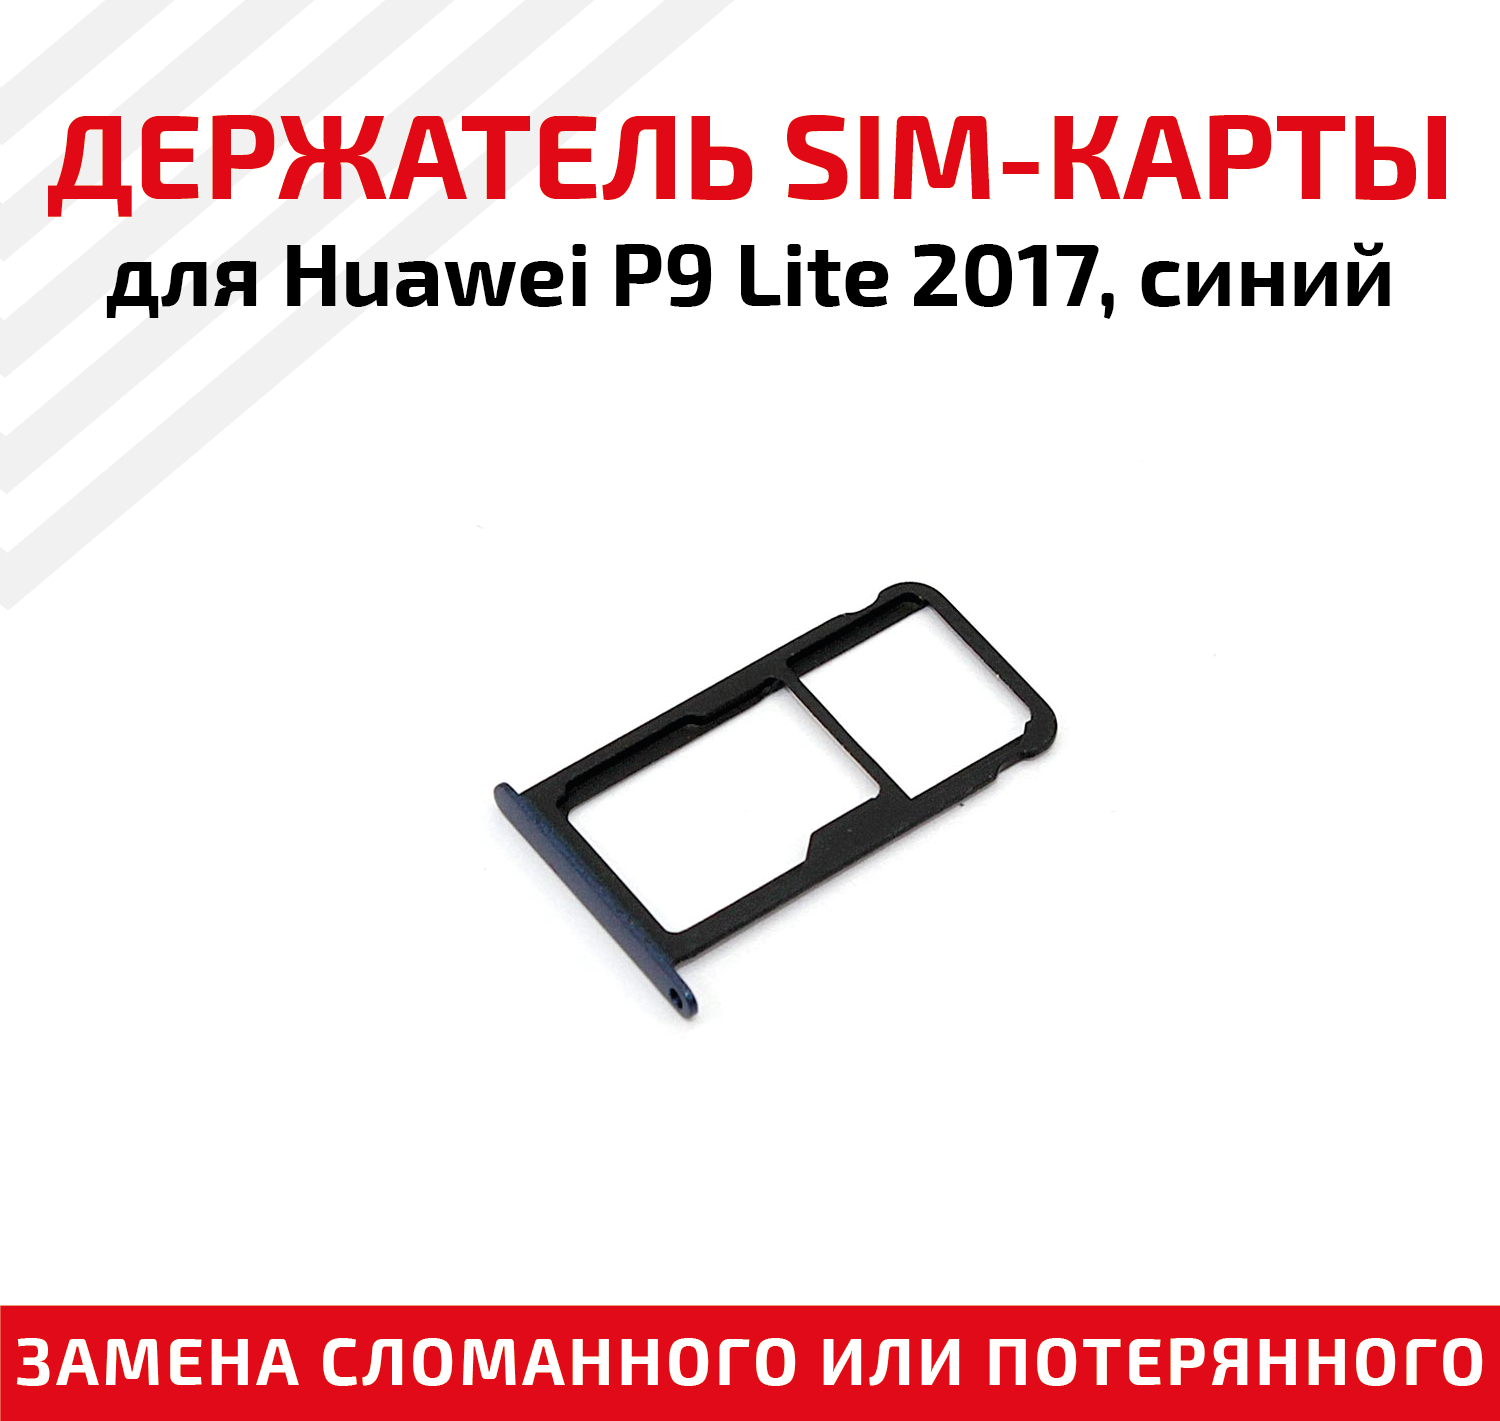 Лоток (держатель, контейнер, слот) SIM-карты для мобильного телефона (смартфона) Huawei P9 Lite 2017, синий